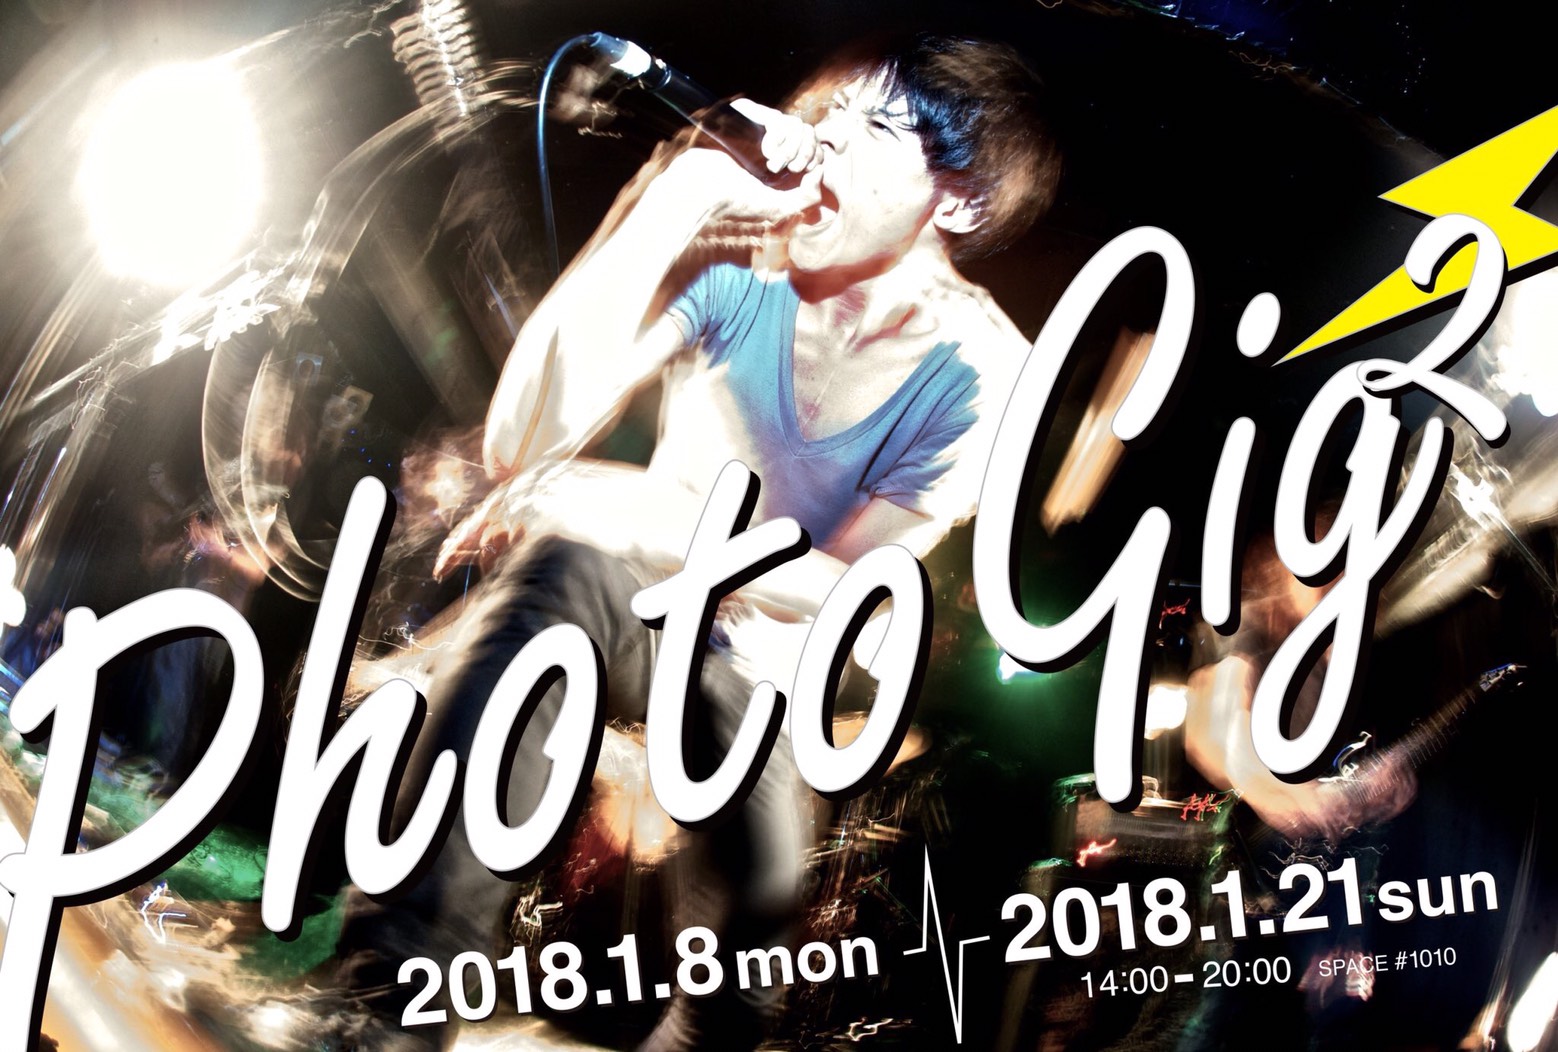 【Photogig2 Opening Live】